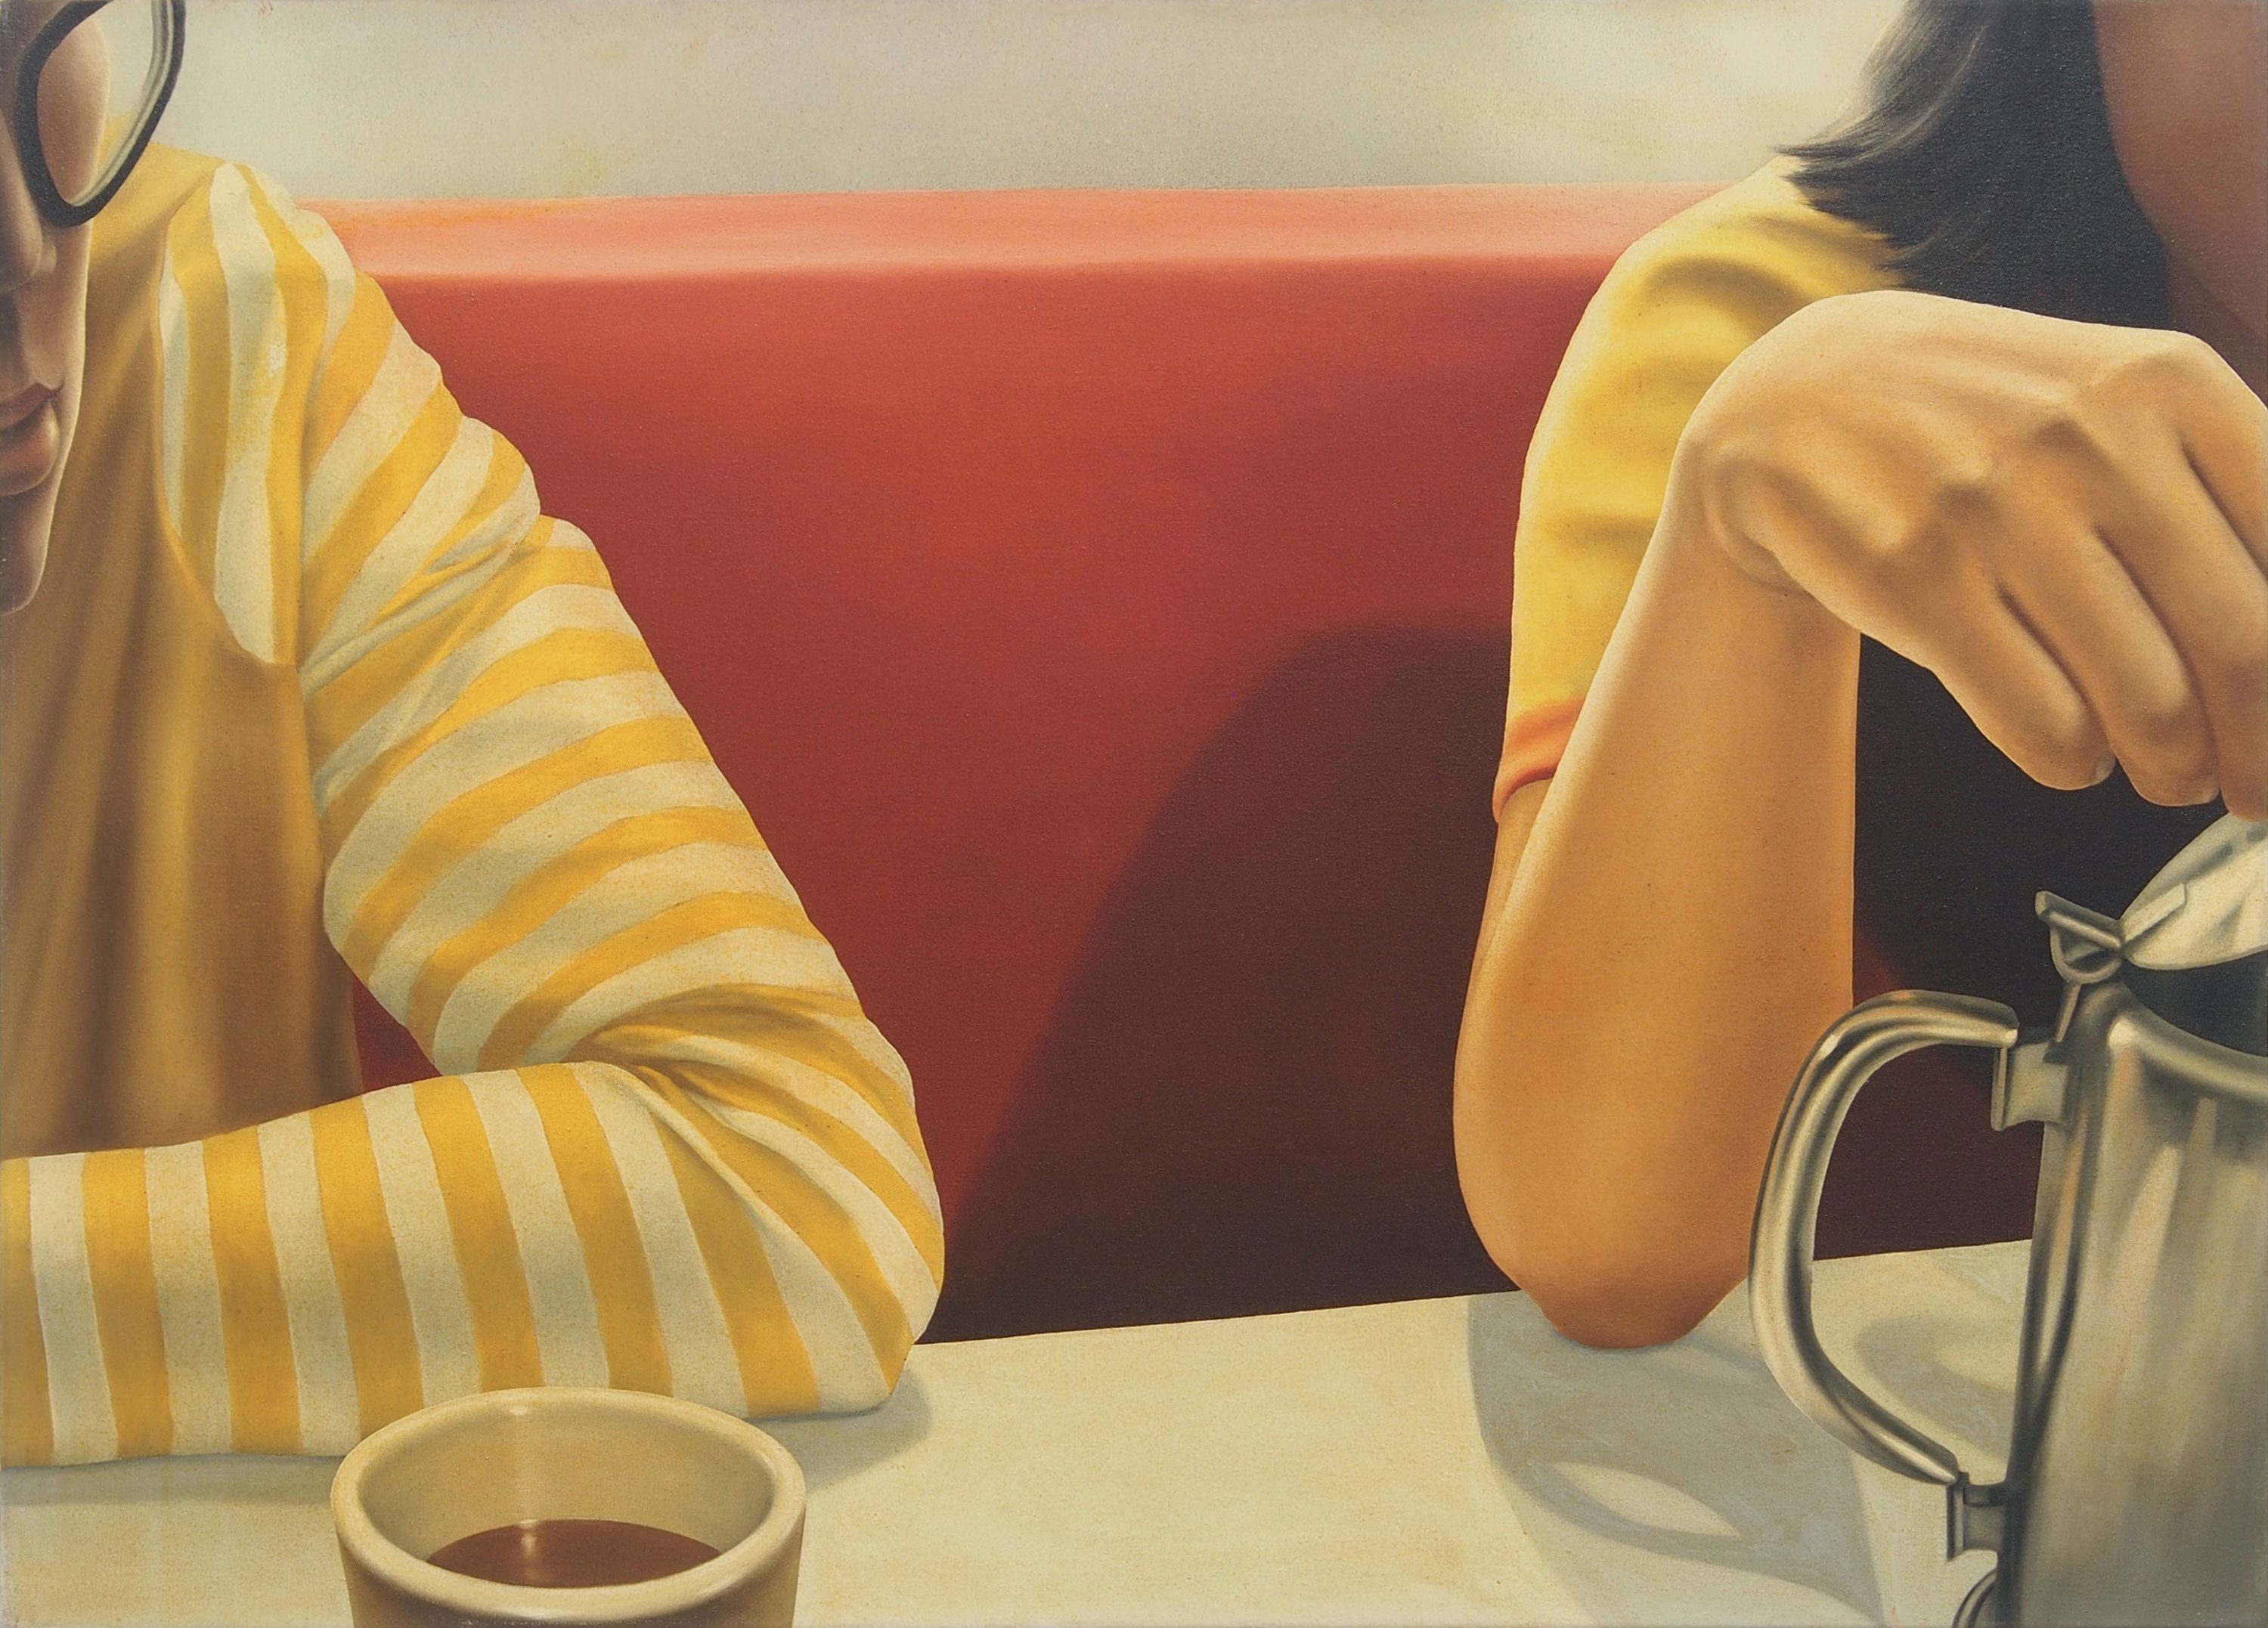 陳昭宏 Hilo Chen, Coffee shop A, 1972, 畫布油彩 oil on canvas, 91.5 x 127 cm